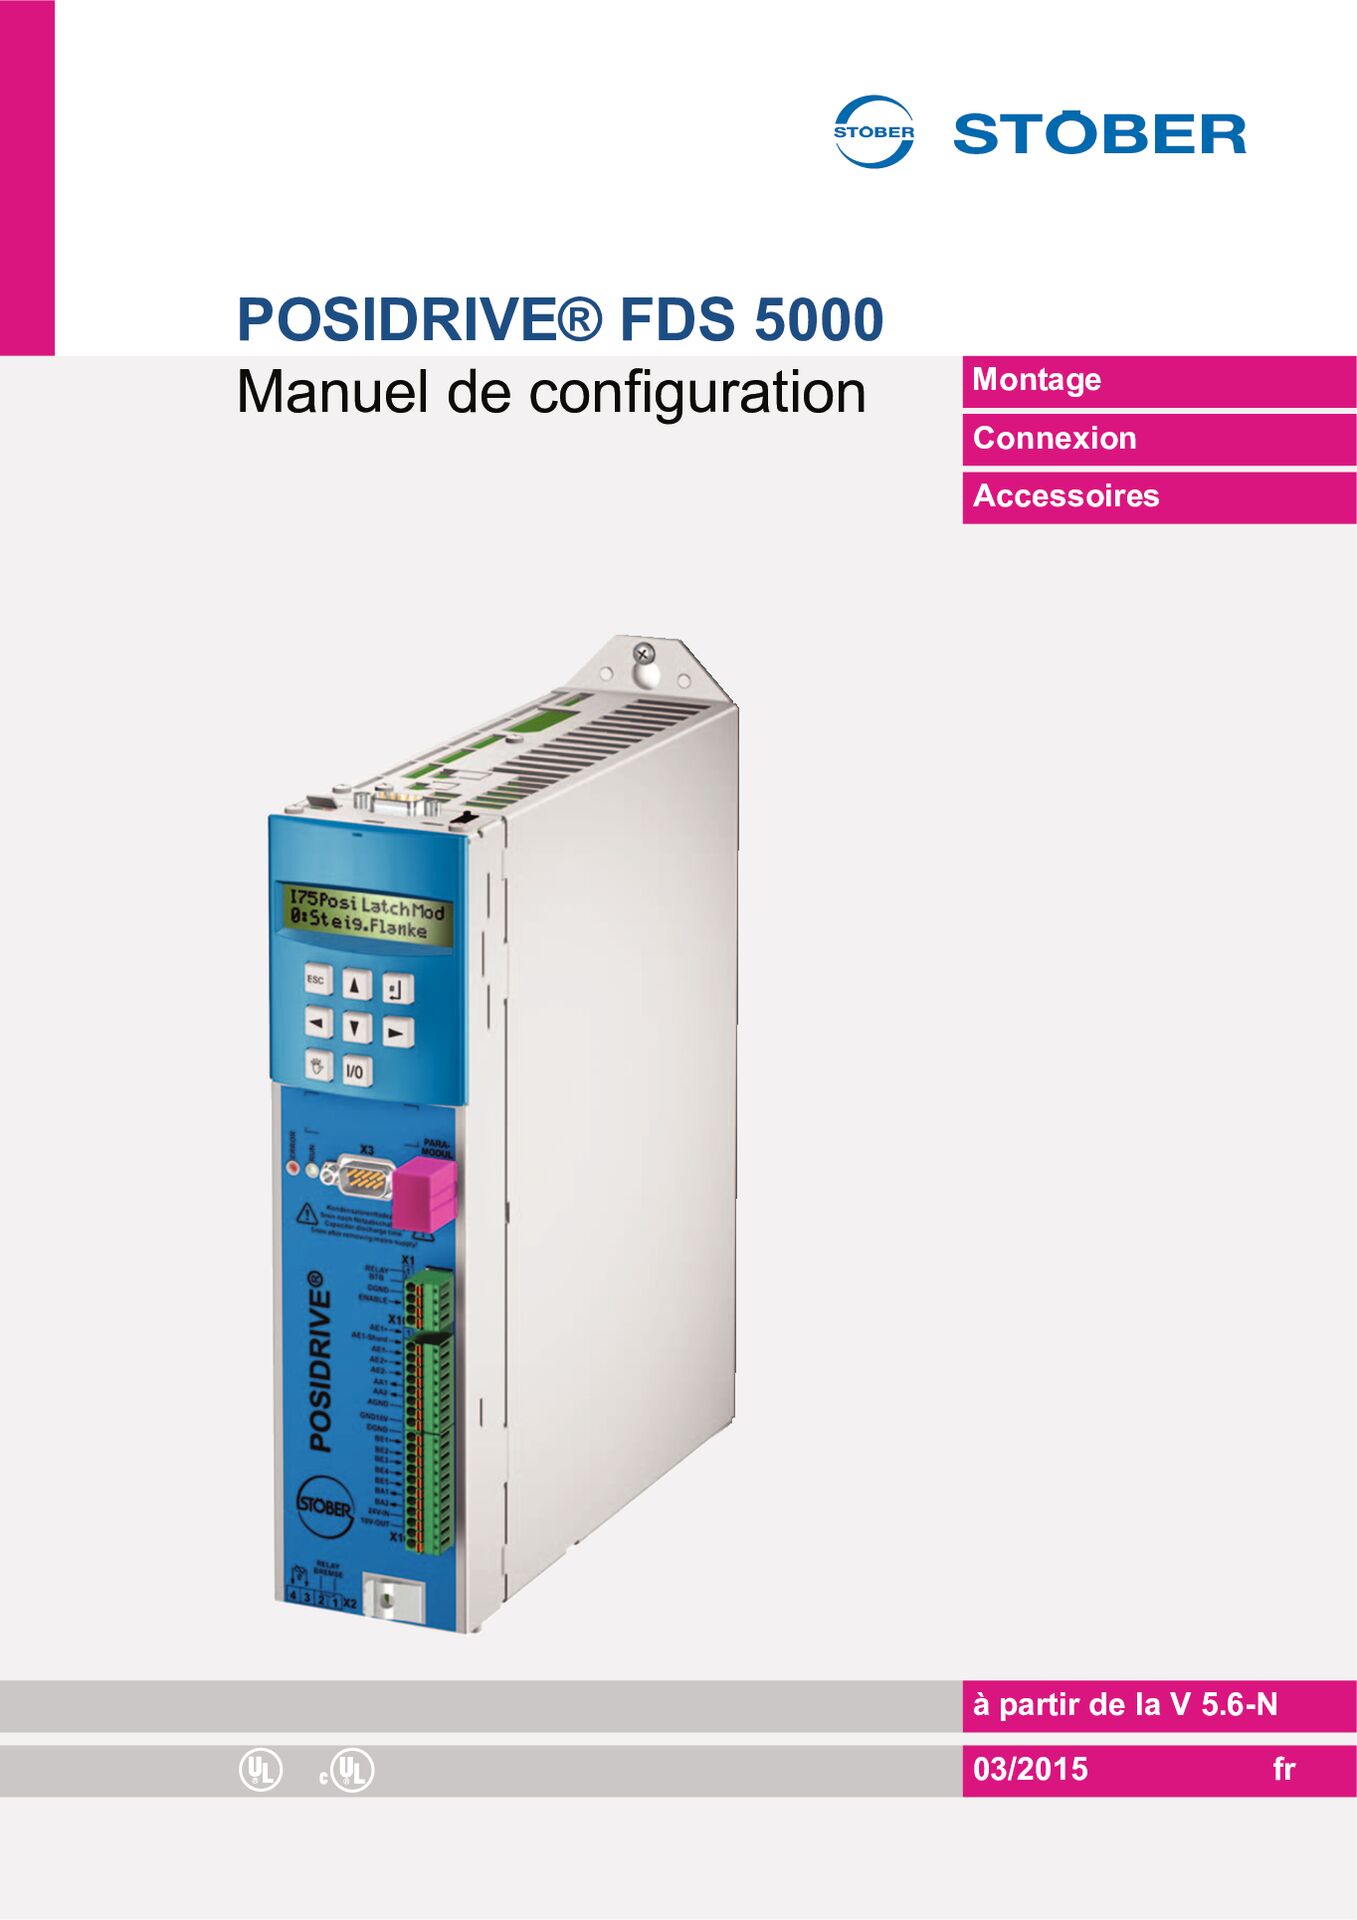 Manuel der cofiguration Convertisseur de fréquence FDS 5000